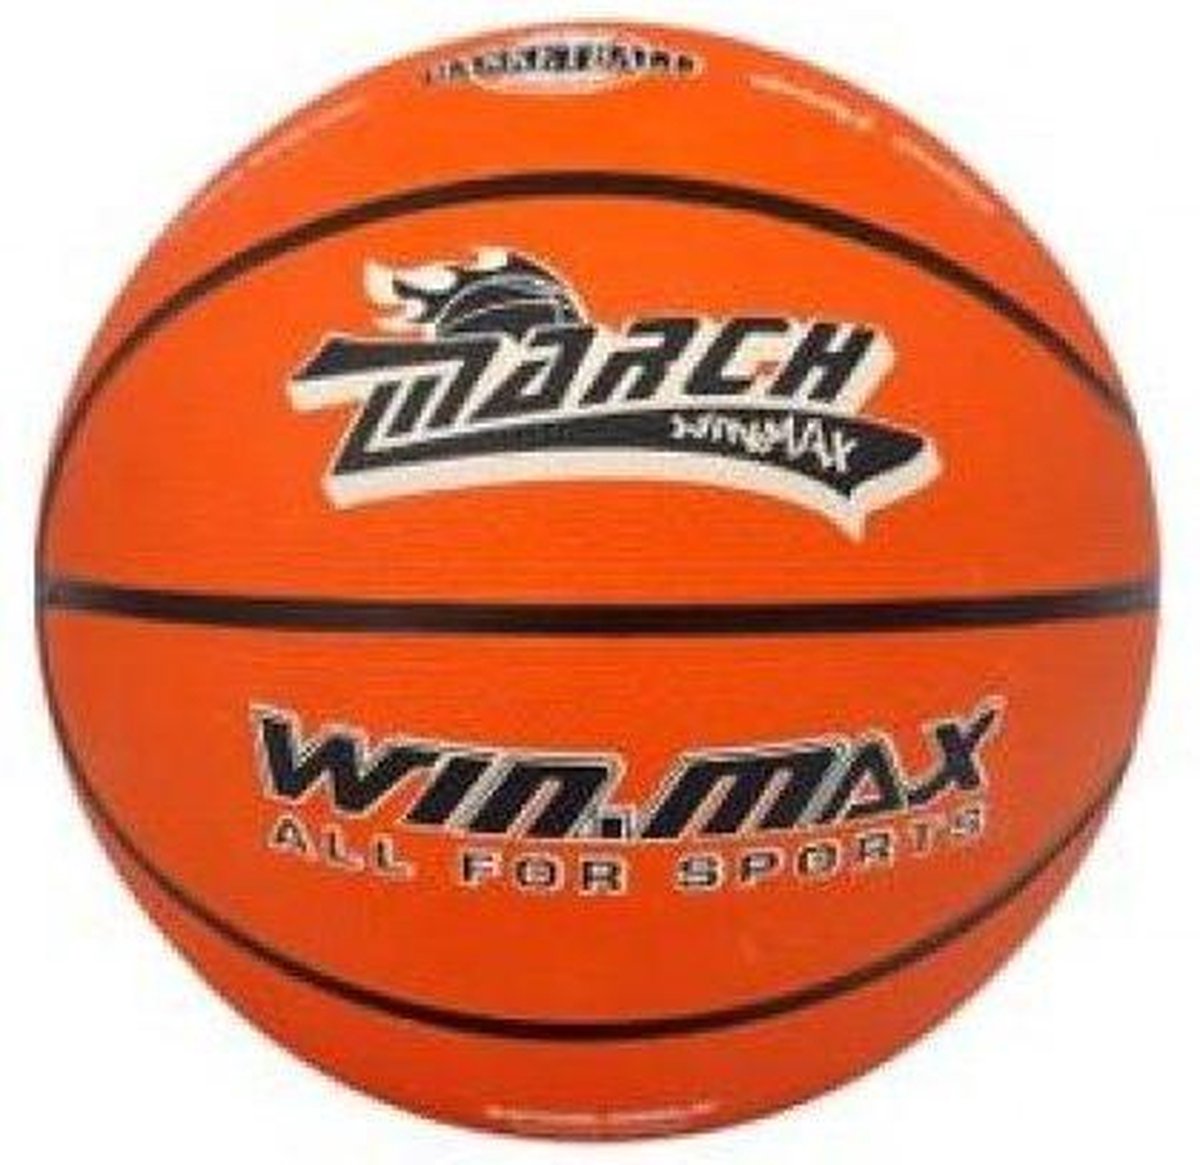 Winmax Basketbal junior march maat 5 oranje